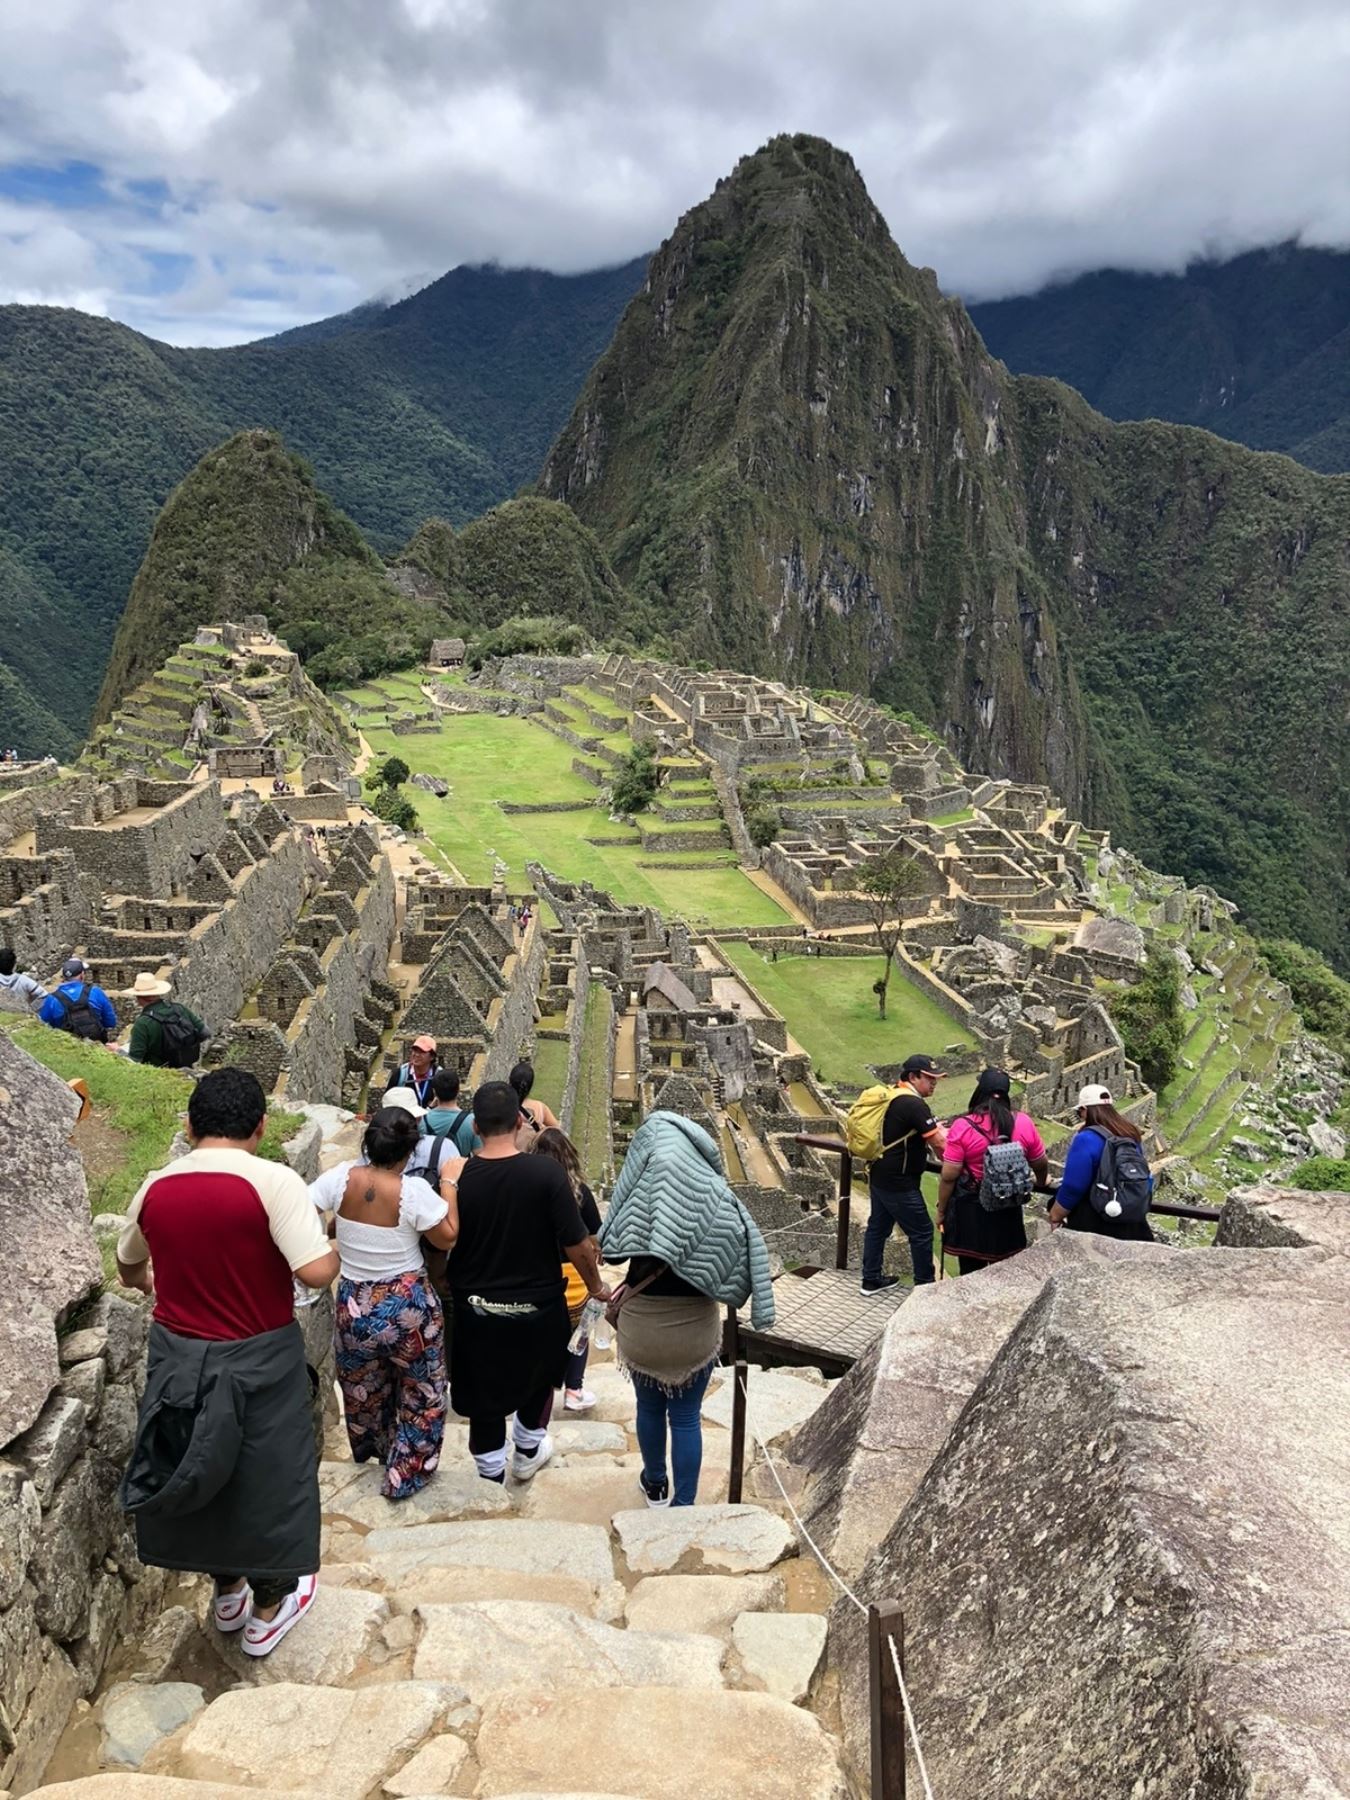 La ministra de Cultura, Leslie Urteaga, expresó hoy su confianza en que, tras la reapertura al turismo de Machu Picchu, la afluencia de visitantes alcanzará los niveles óptimos con un máximo de 4,044 personas por día, que es el aforo límite establecido para garantizar la integridad de la ciudadela inca, Patrimonio de la Humanidad y maravilla mundial. ANDINA/Difusión